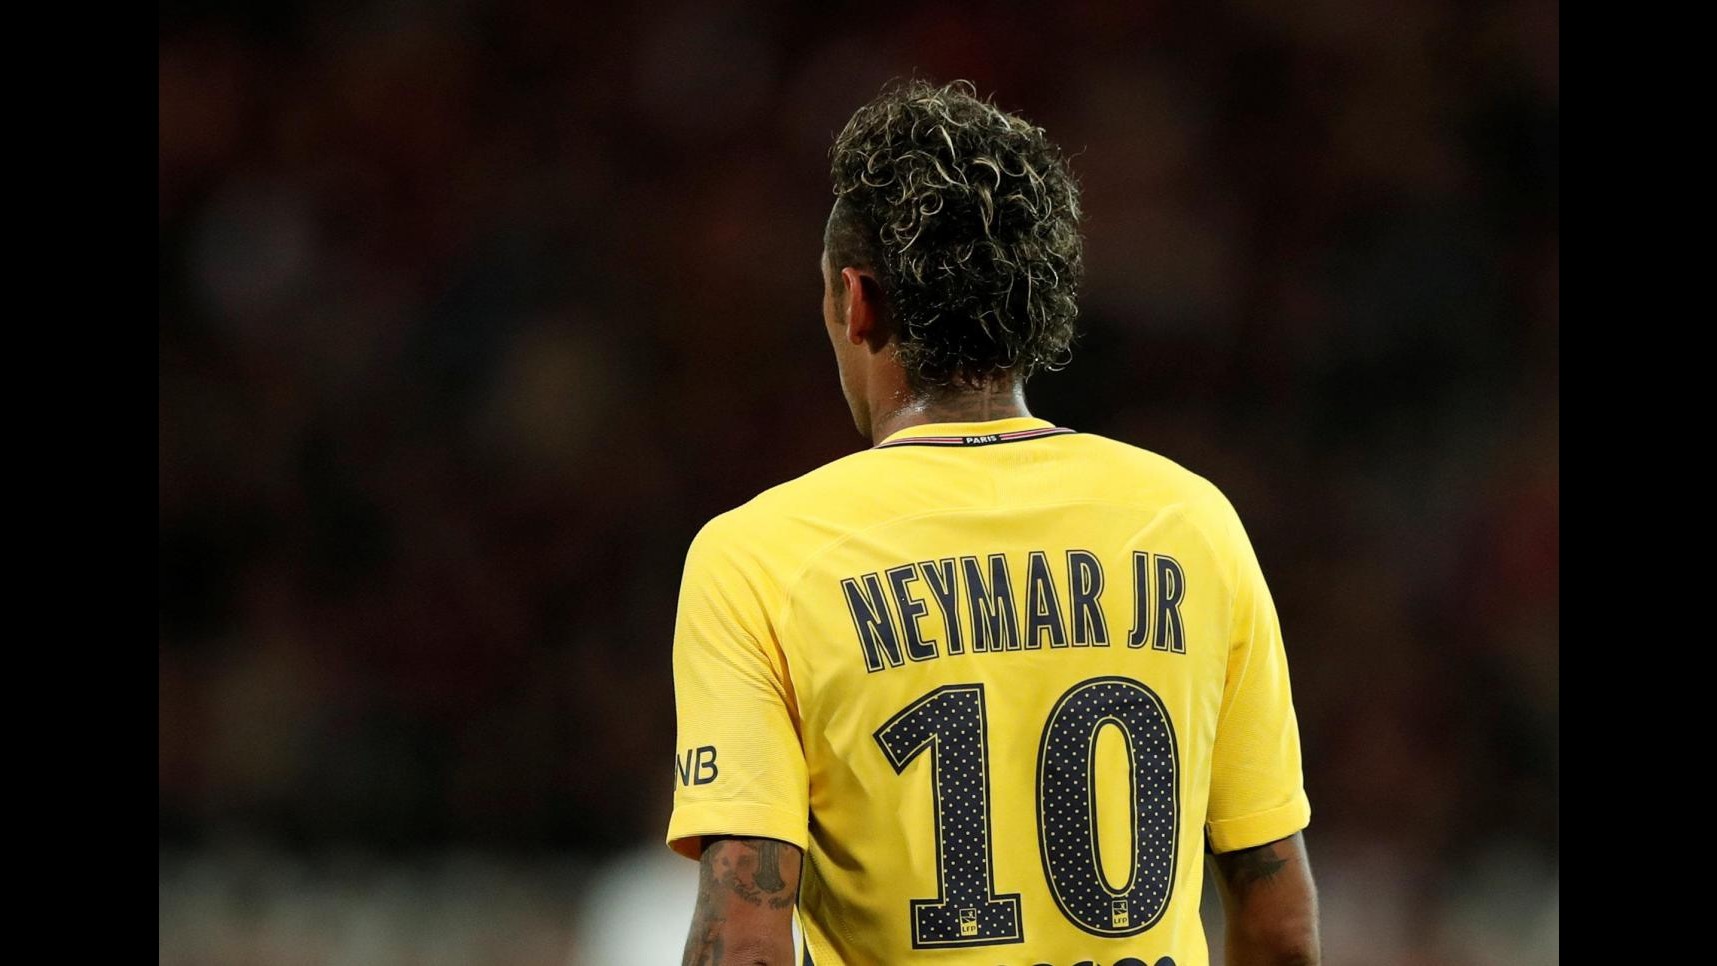 FOTO Ligue 1: debutto da manuale per Neymar con la maglia del Psg